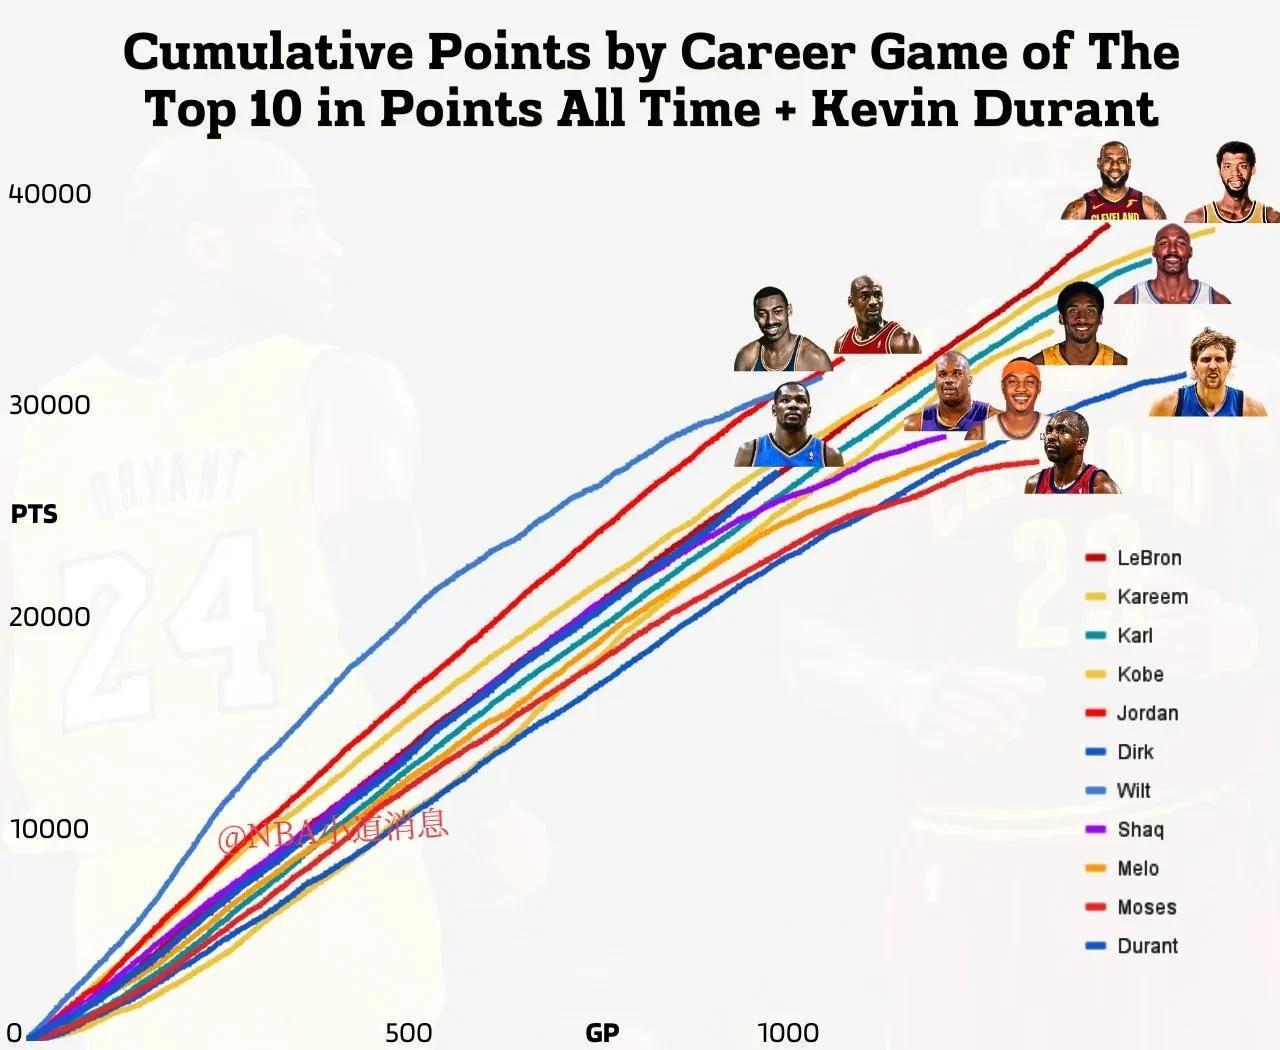 杜兰特是NBA历史得分榜前20名中唯一一位出场次数少于1000场的球员。
杜兰特(2)